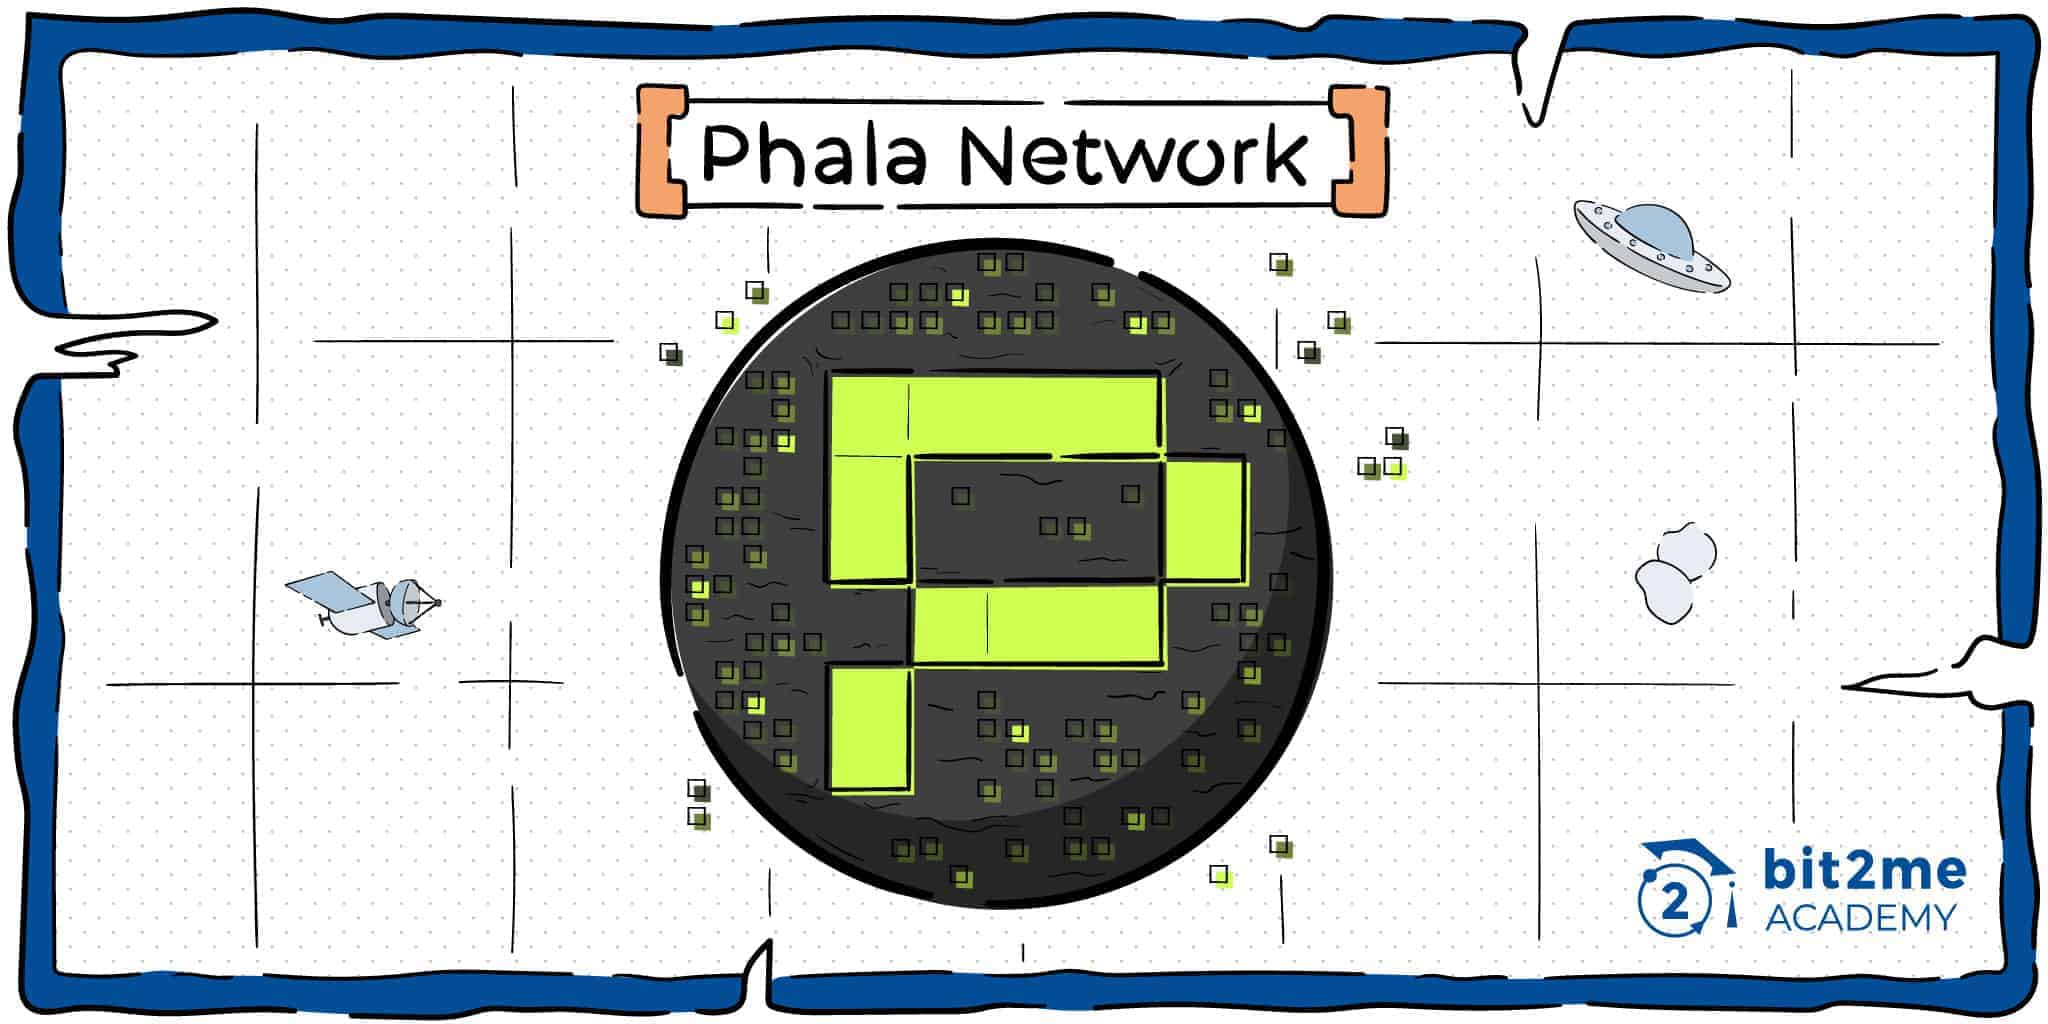 Phala